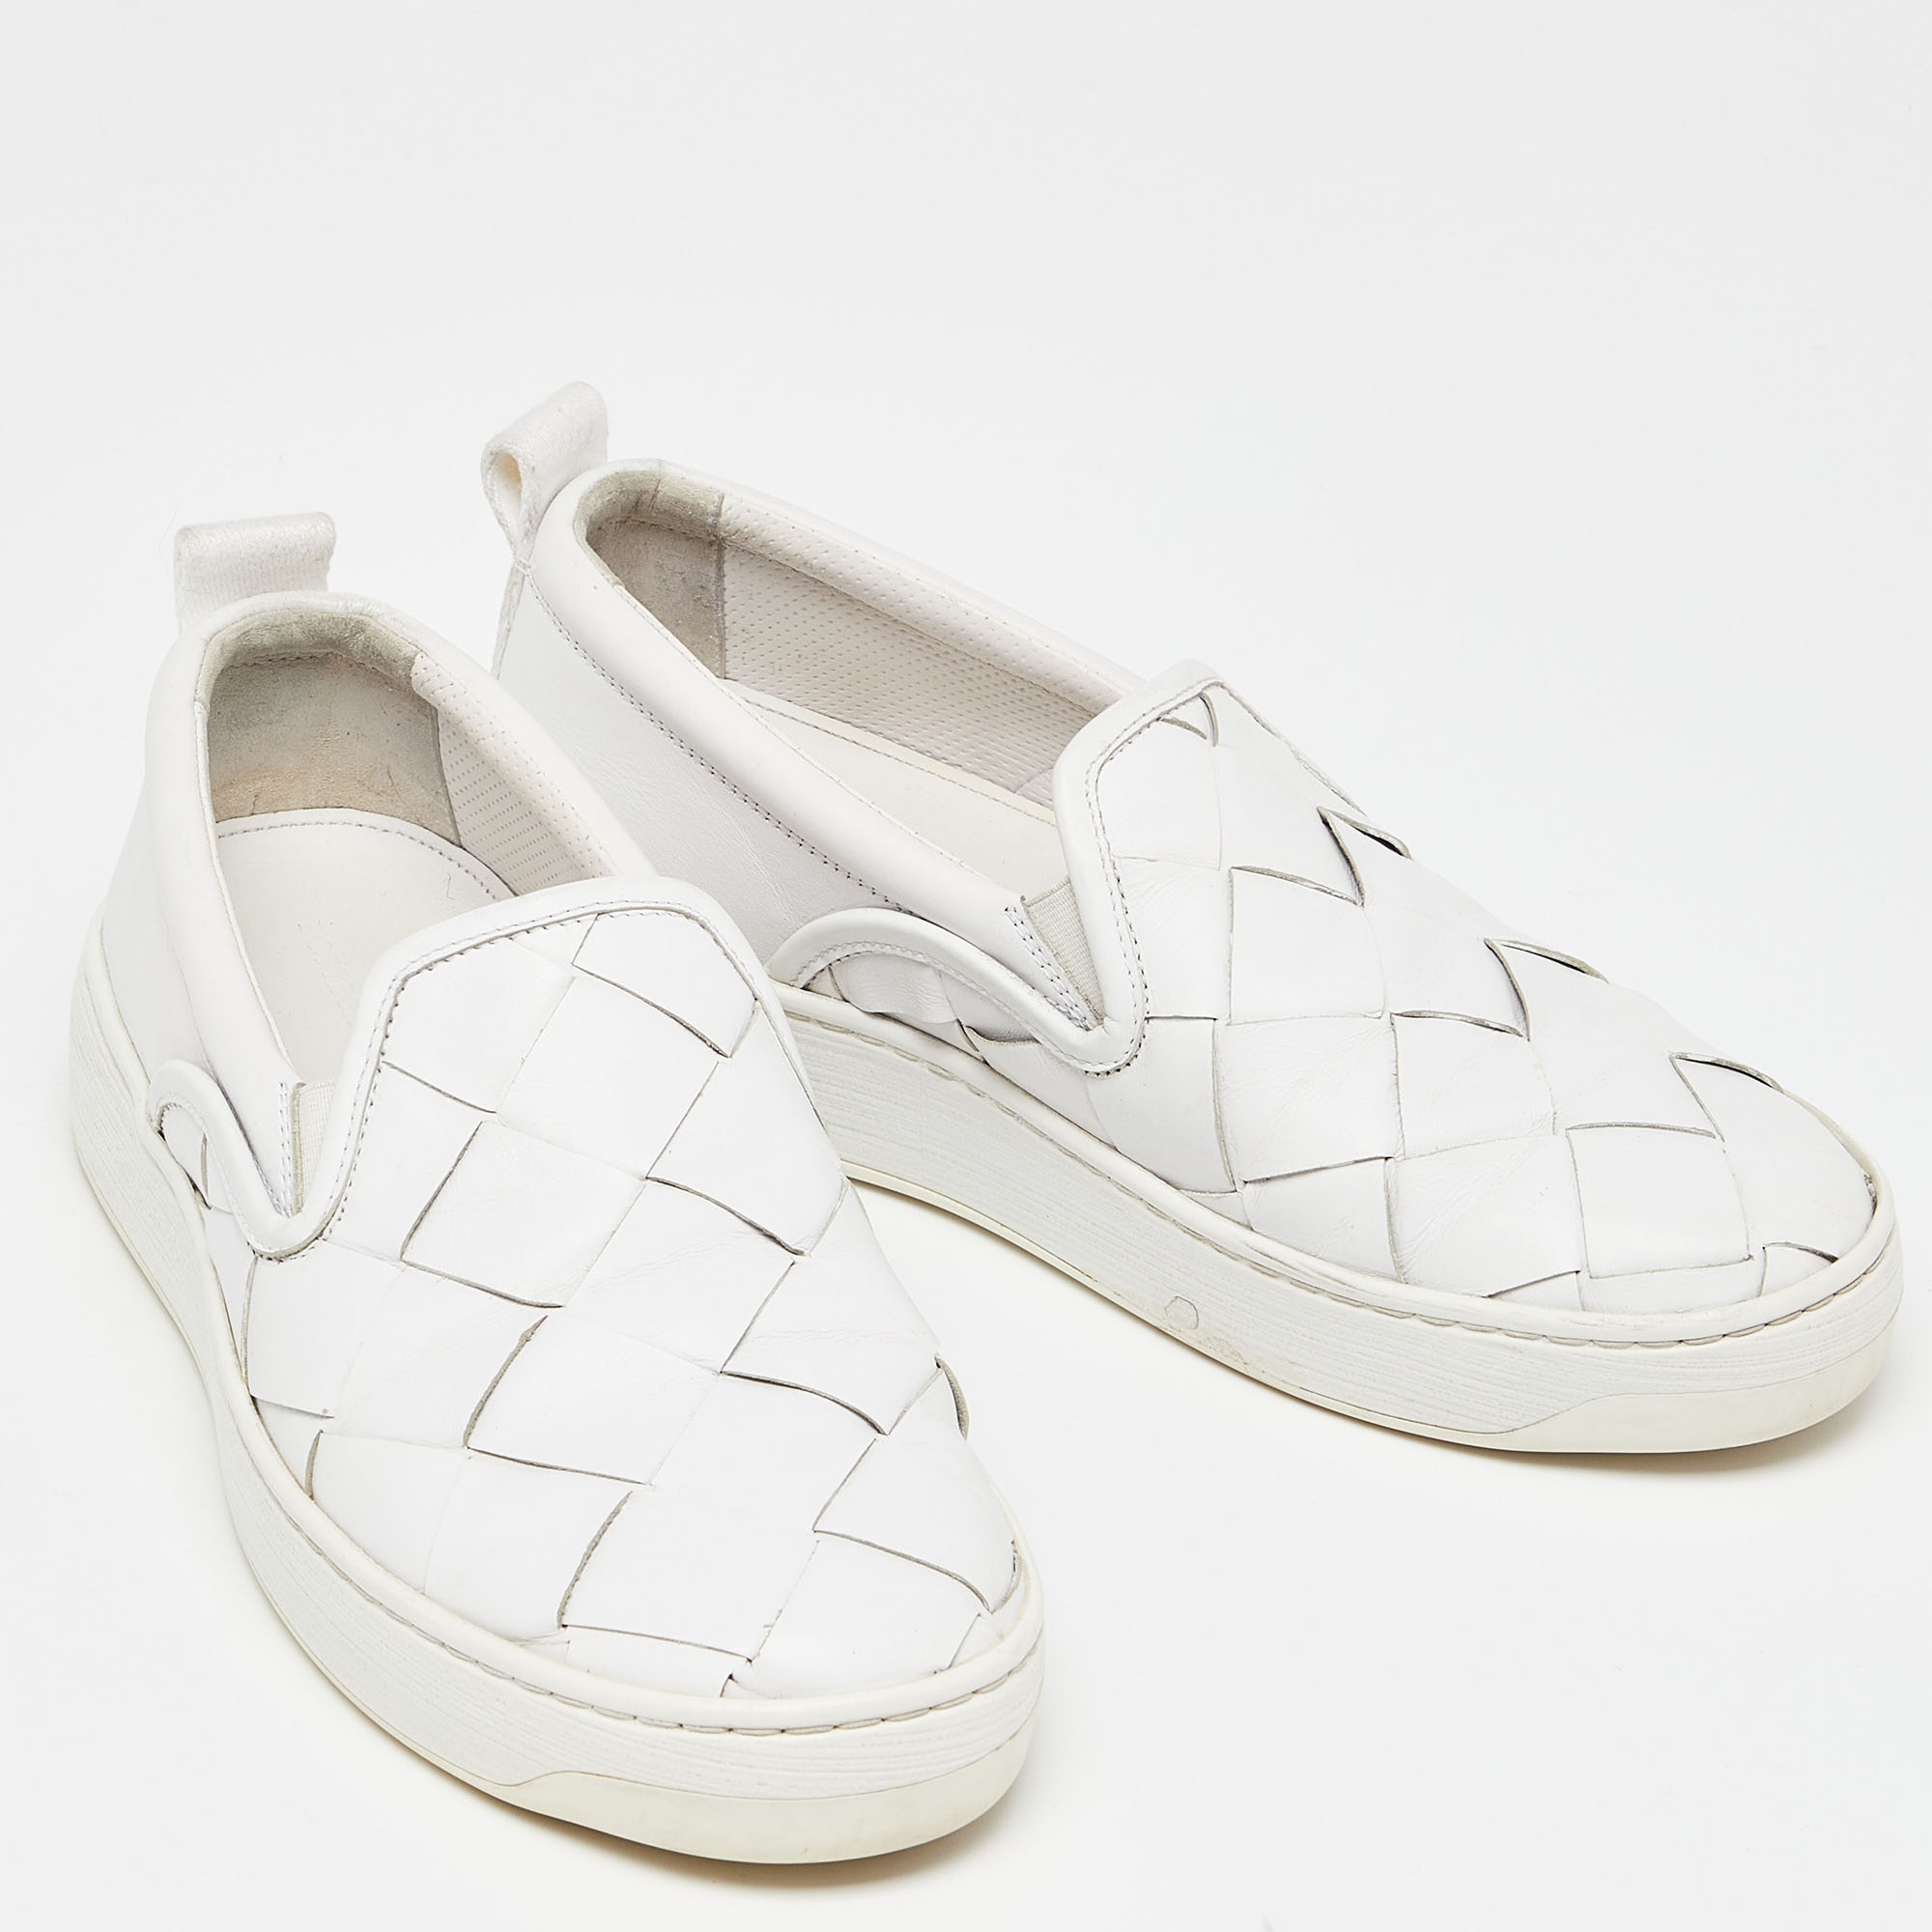 Bottega Veneta White Intrecciato Leather Slip On Sneakers Size 38